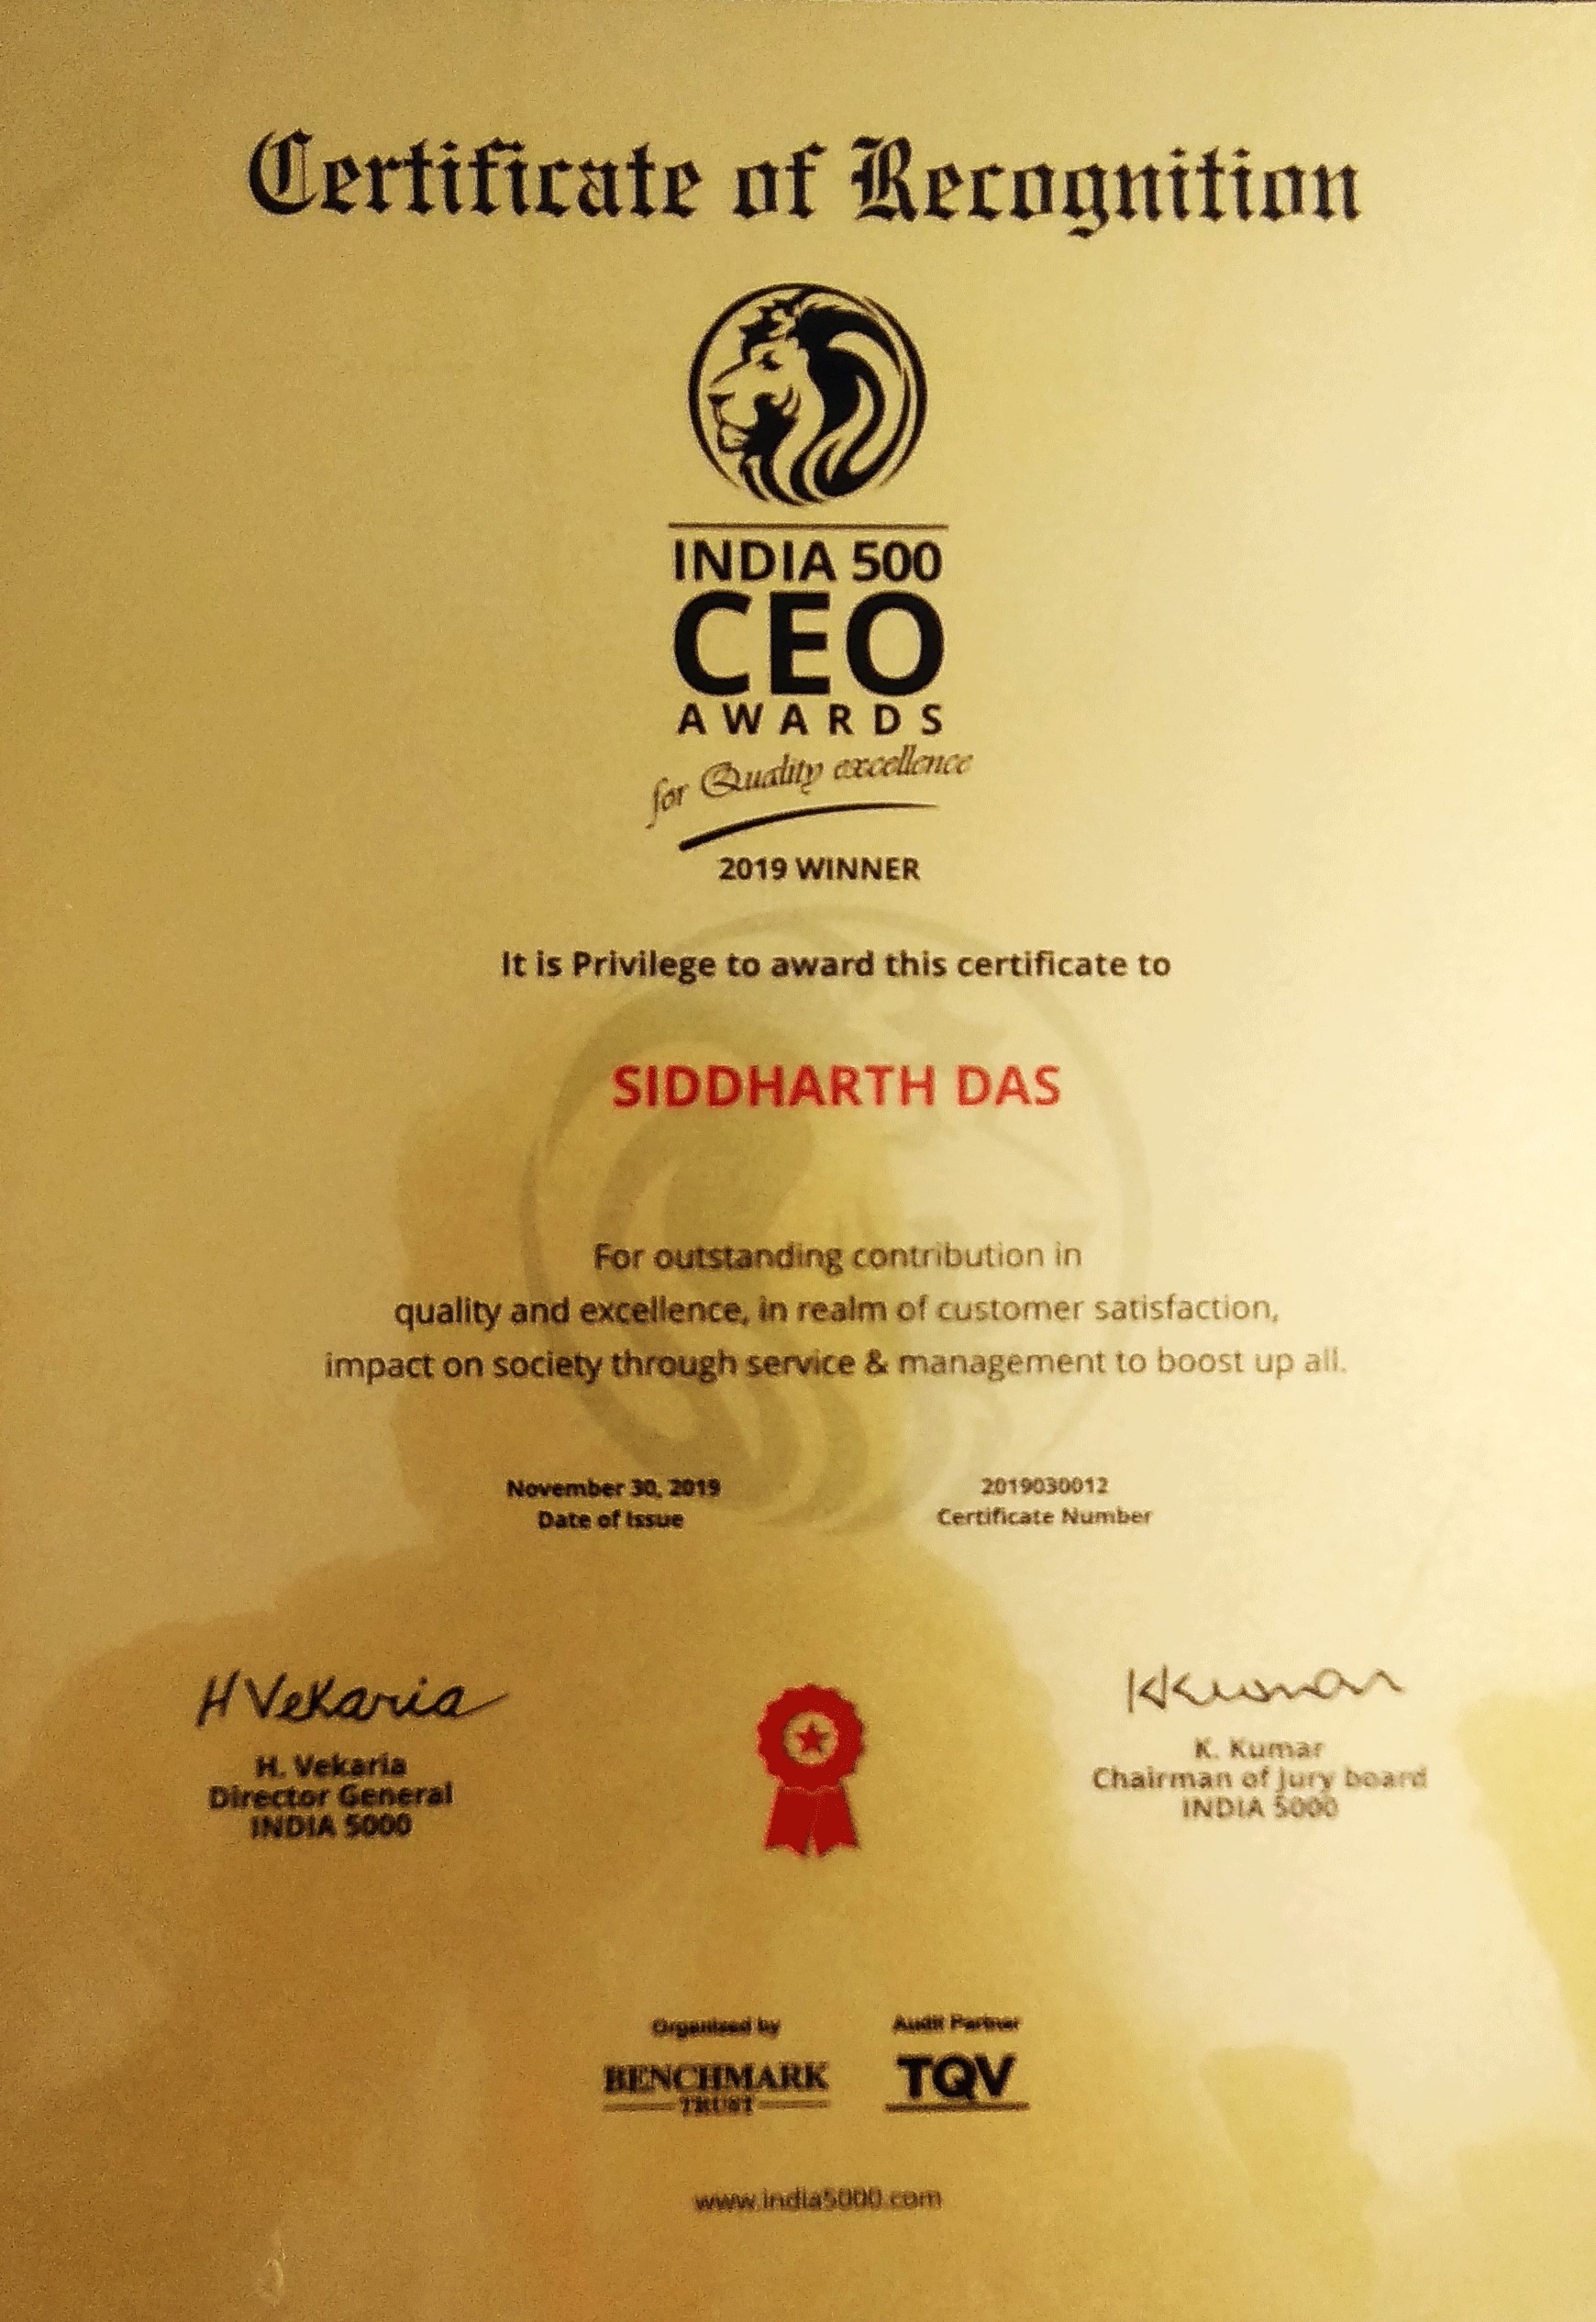 India 500 CEO Awards 2019